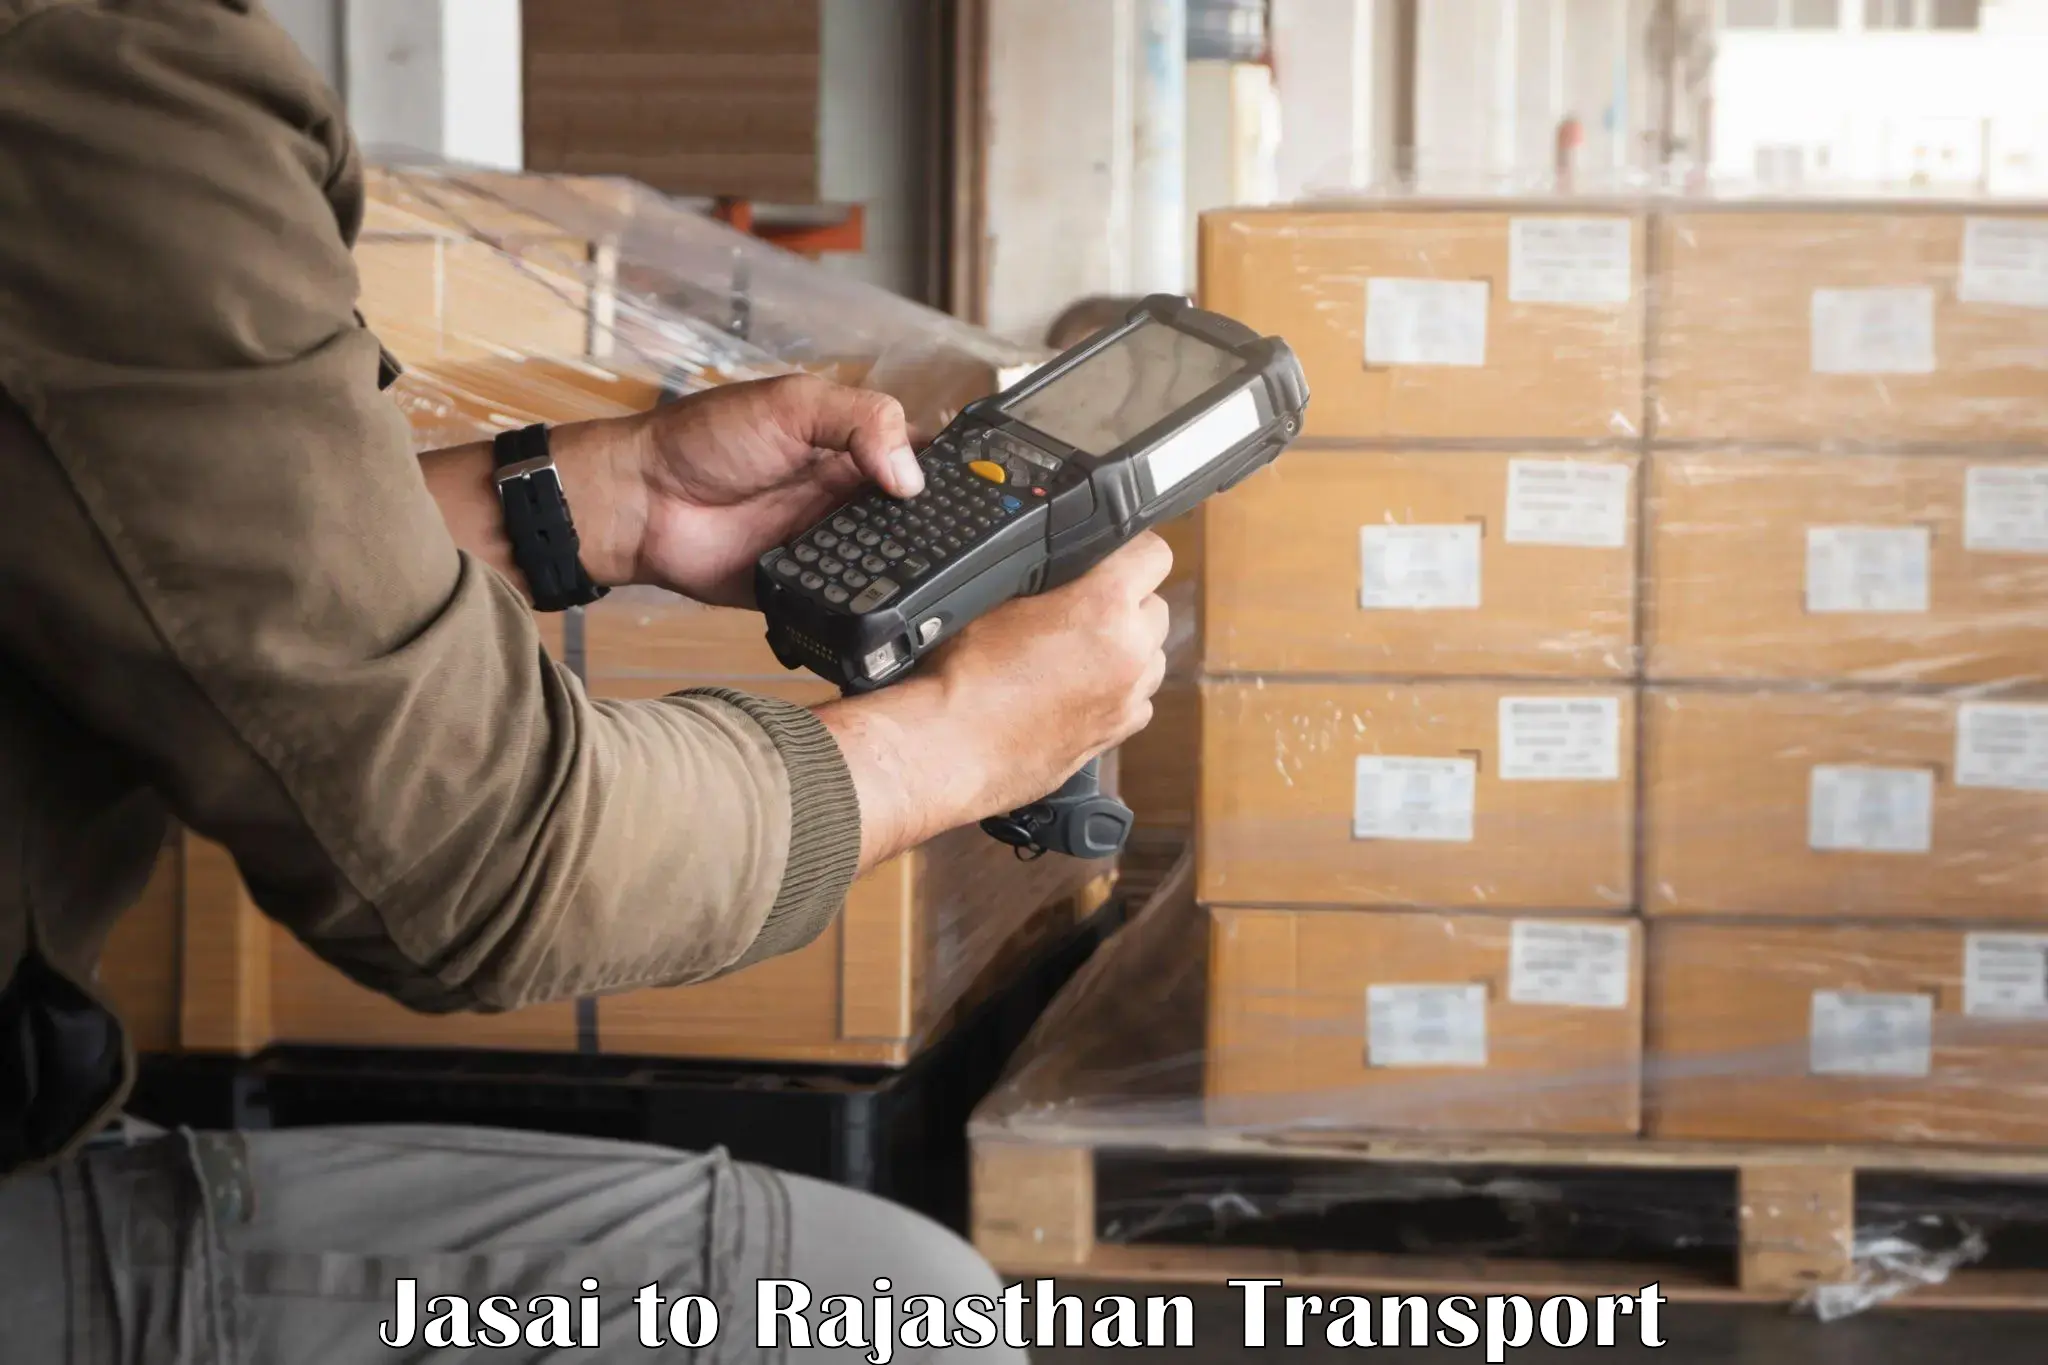 Furniture transport service in Jasai to Rajasthan